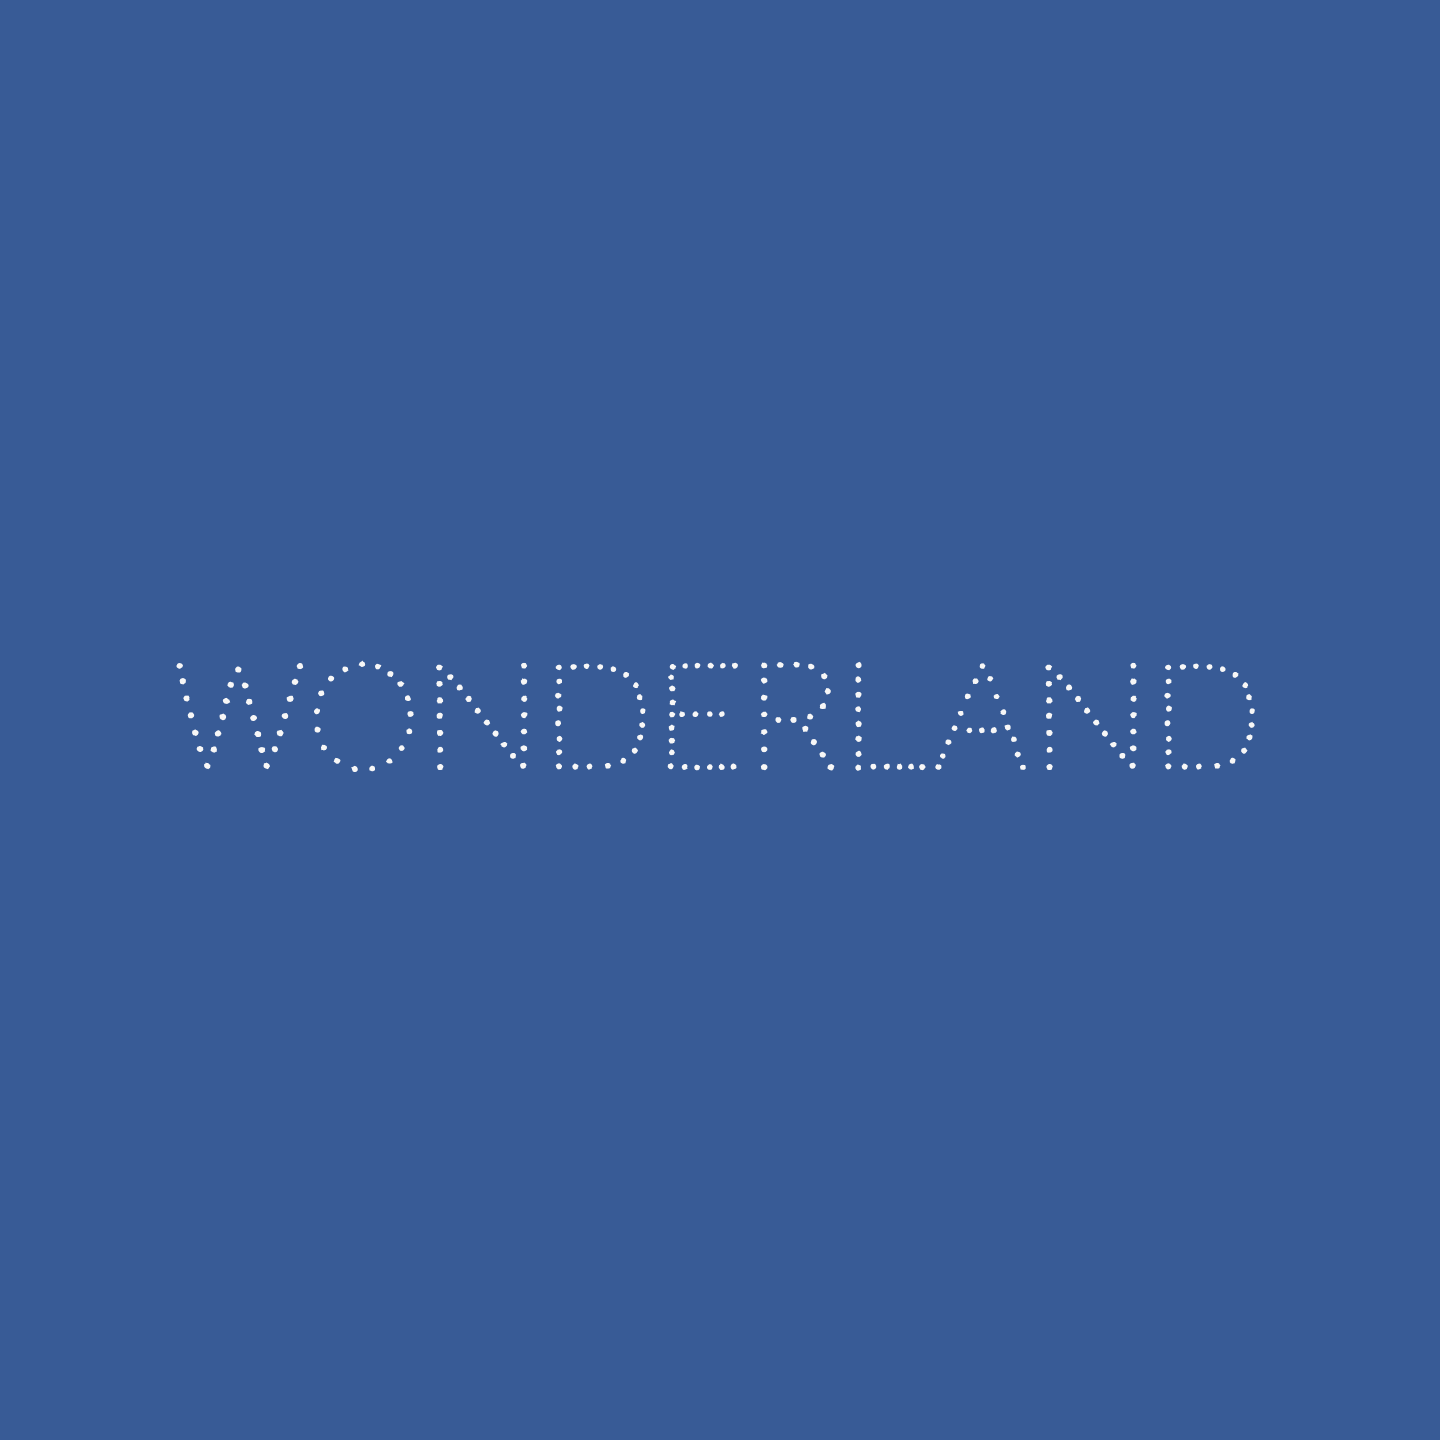 wonderland